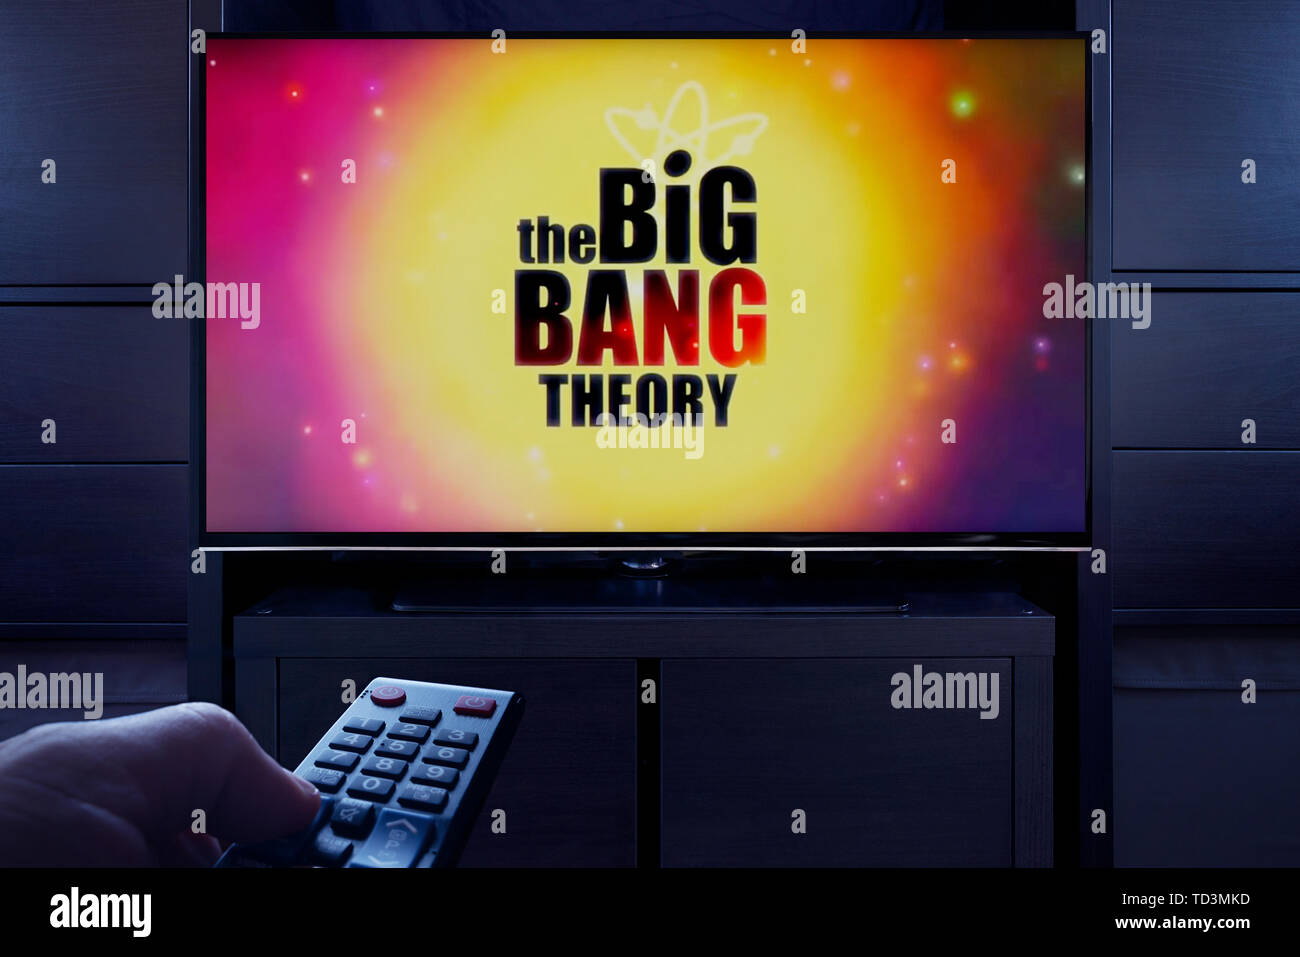 Un homme d'un points TV remote à la télévision qui affiche la théorie du Big Bang (l'écran titre principal usage éditorial uniquement). Banque D'Images